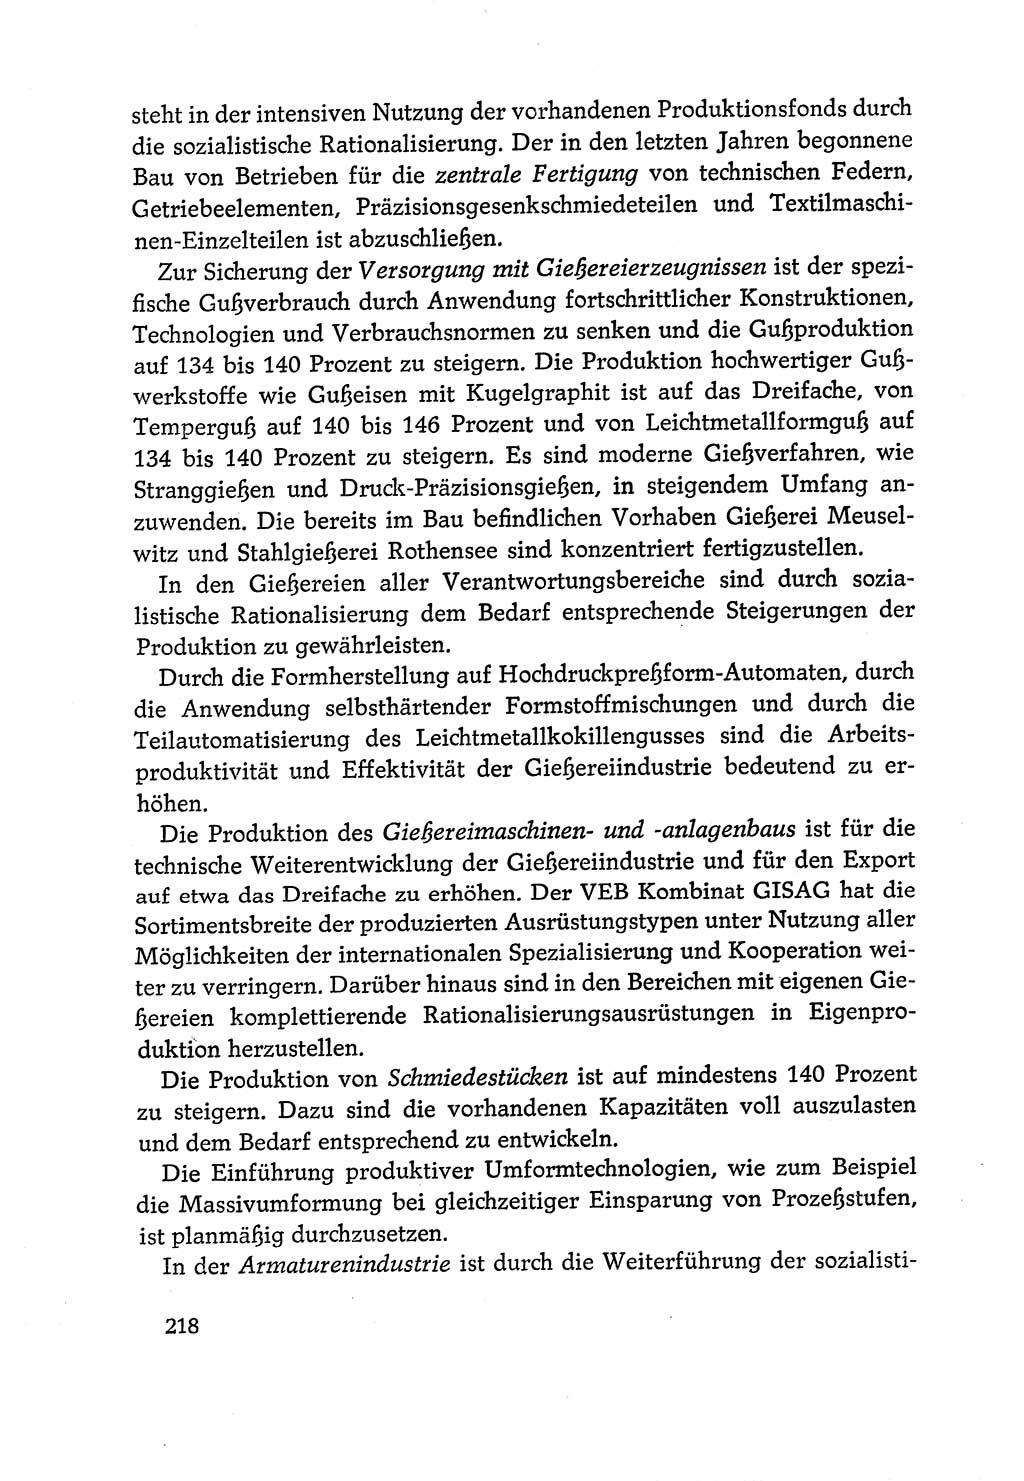 Dokumente der Sozialistischen Einheitspartei Deutschlands (SED) [Deutsche Demokratische Republik (DDR)] 1970-1971, Seite 218 (Dok. SED DDR 1970-1971, S. 218)